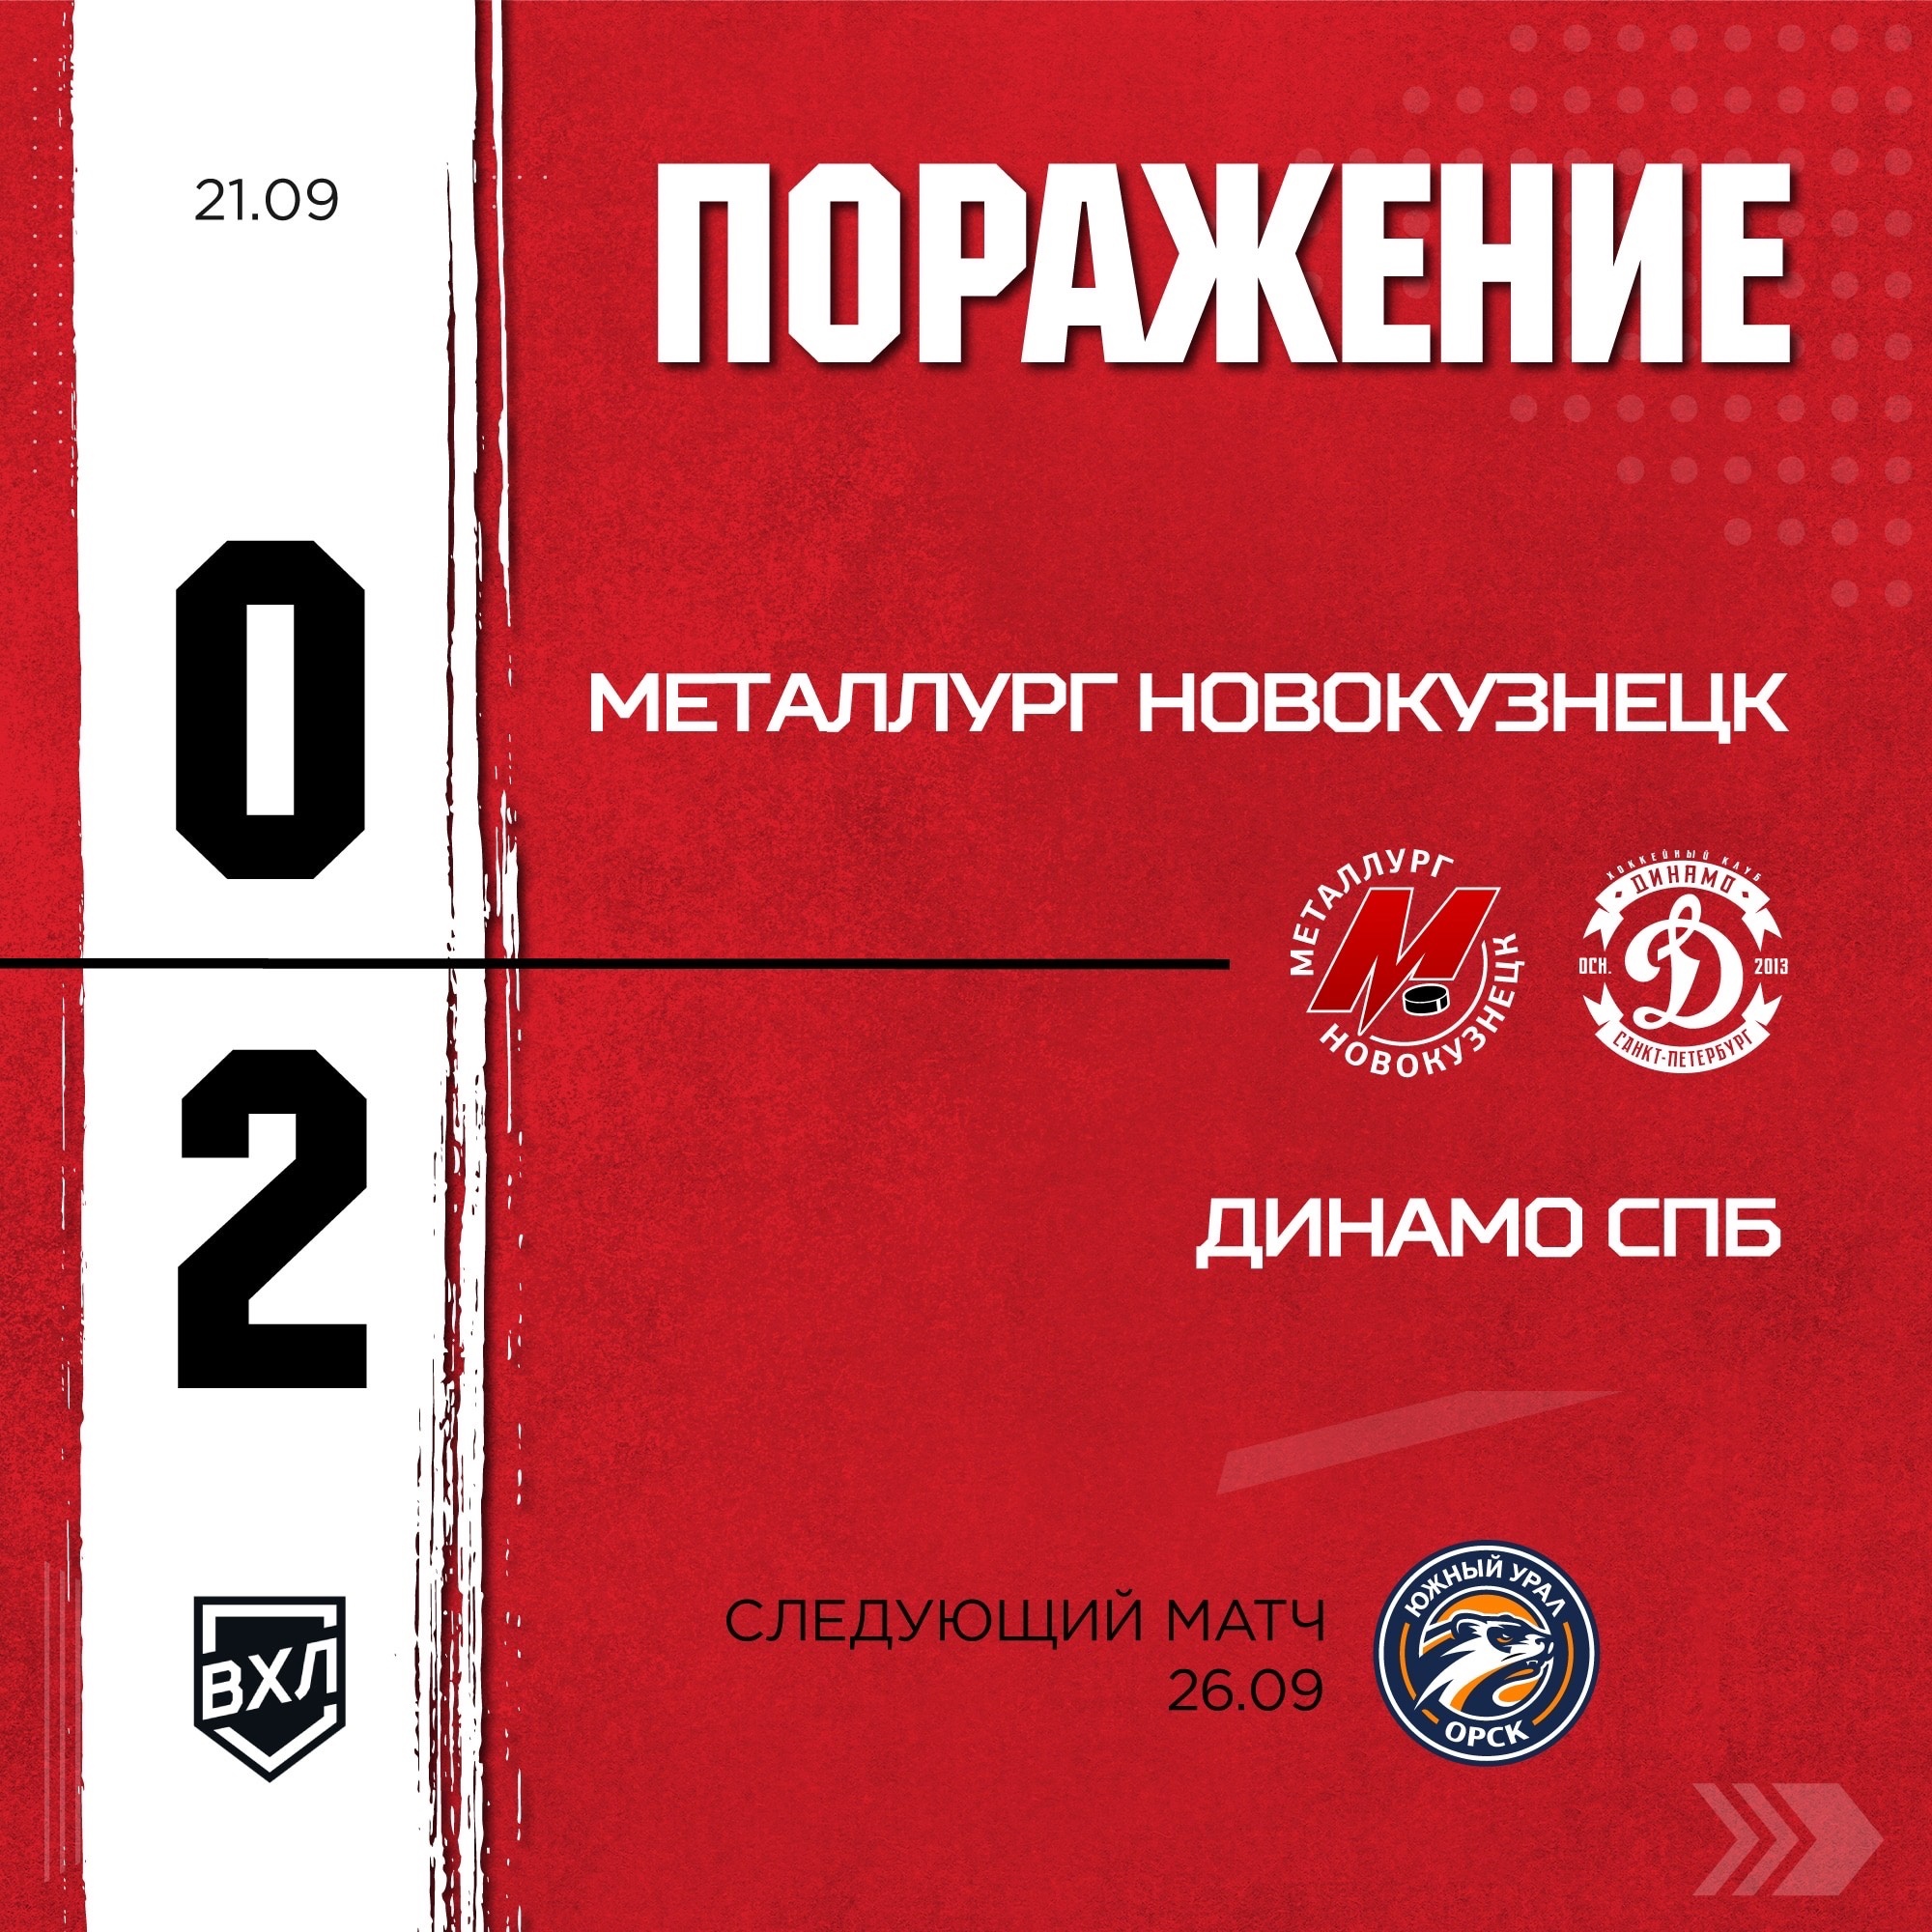 Новокузнецкий «Металлург» завершил первую домашнюю серию в сезоне поражением